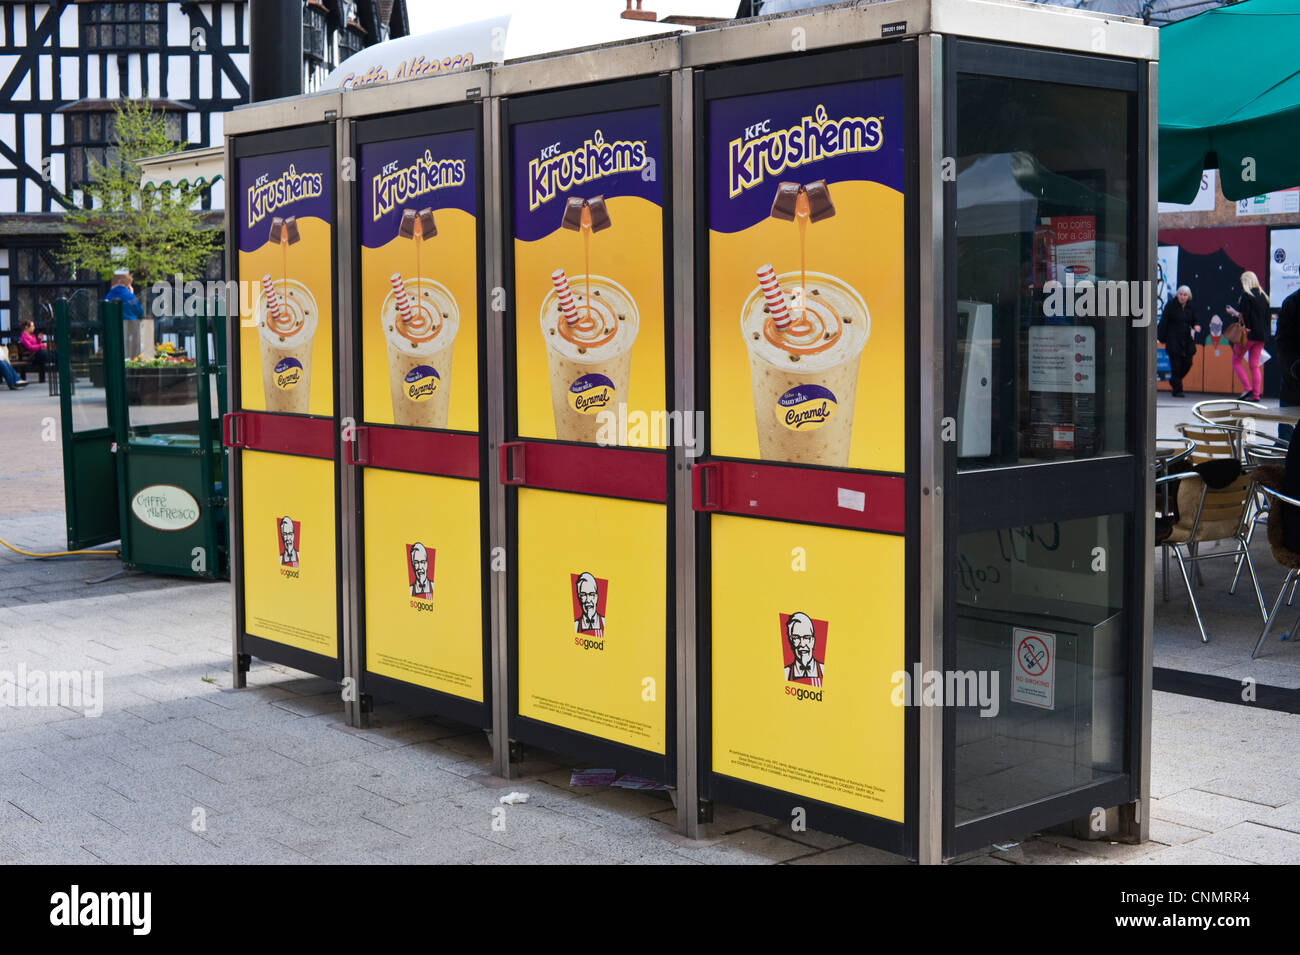 Téléphone BT boîtes avec des affiches publicitaires pour Krushems KFC dans le centre-ville de Hereford Herefordshire Angleterre UK Banque D'Images